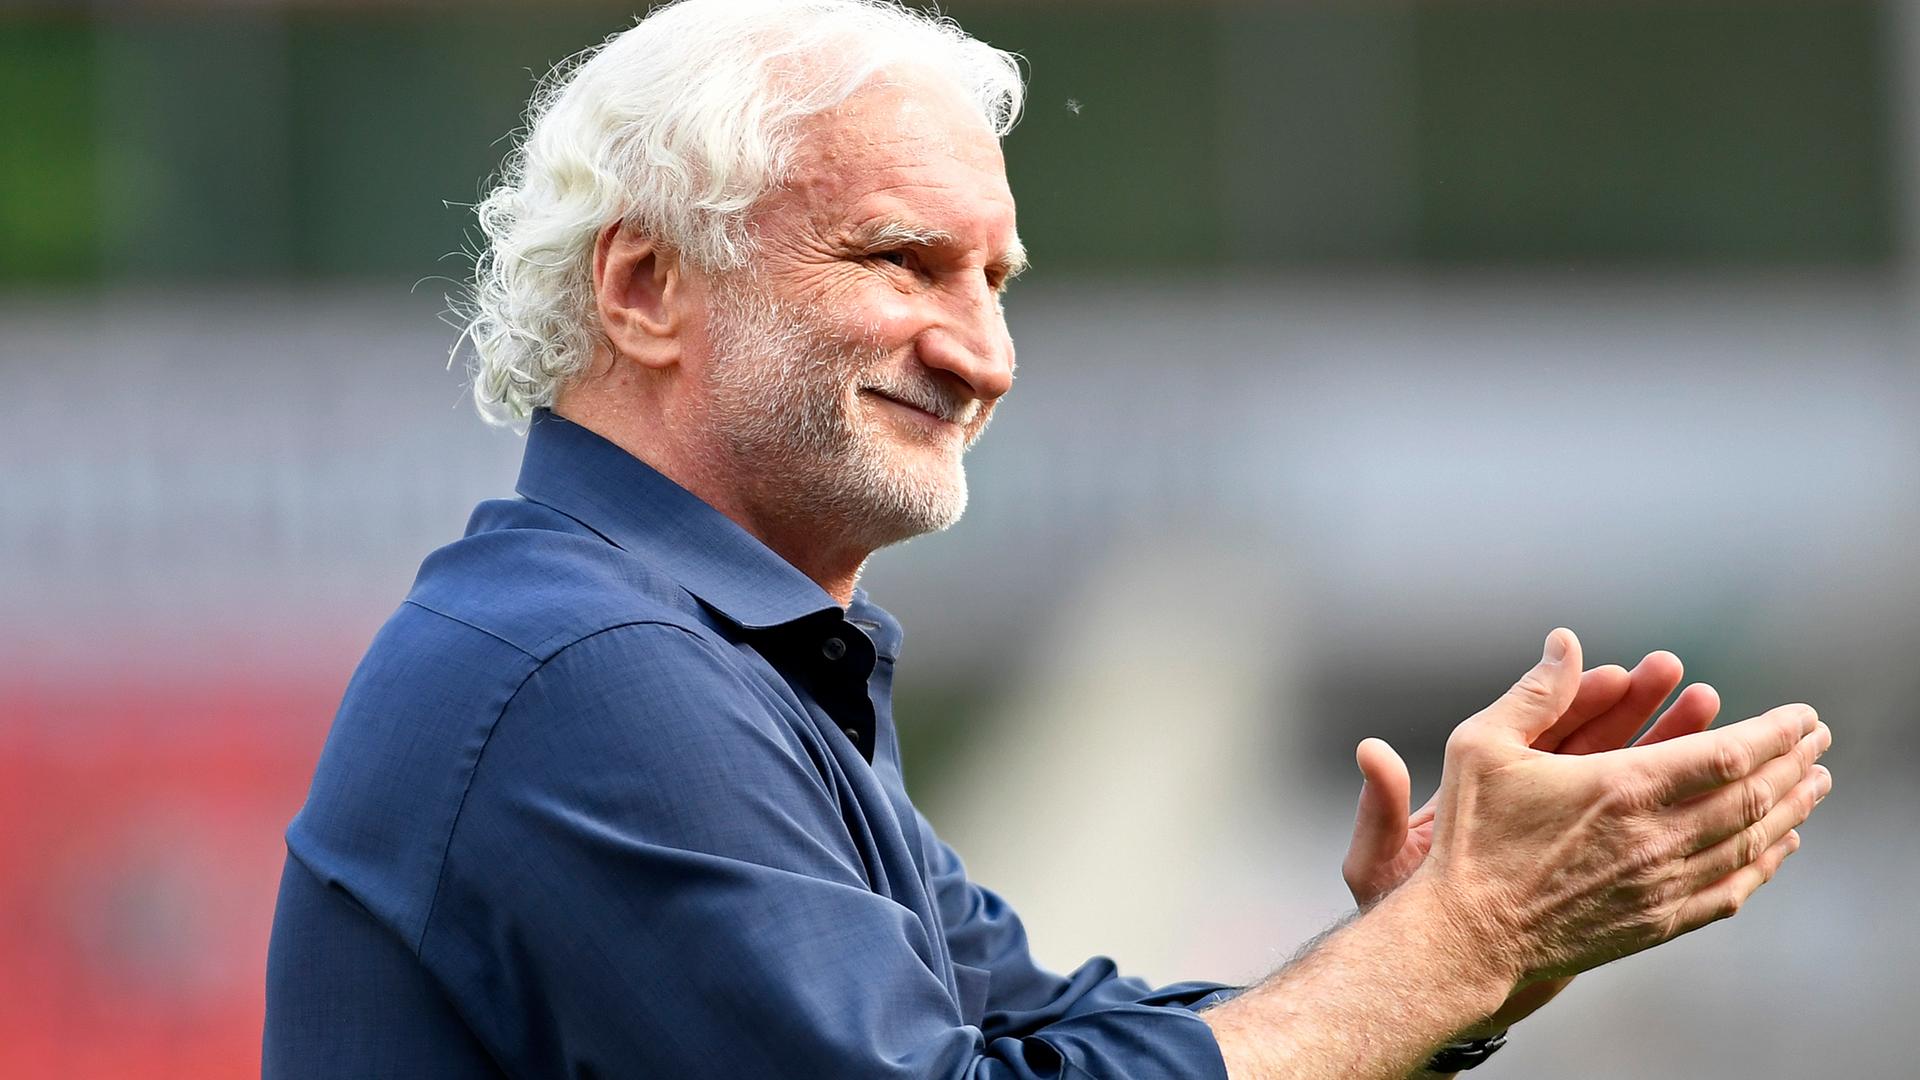 Das Bild zeigt den ehemaligen Fußballer und Nationaltrainer Rudi Völler. Er trägt ein blaues Hemd, lächelt breit und klatscht in die Hände.